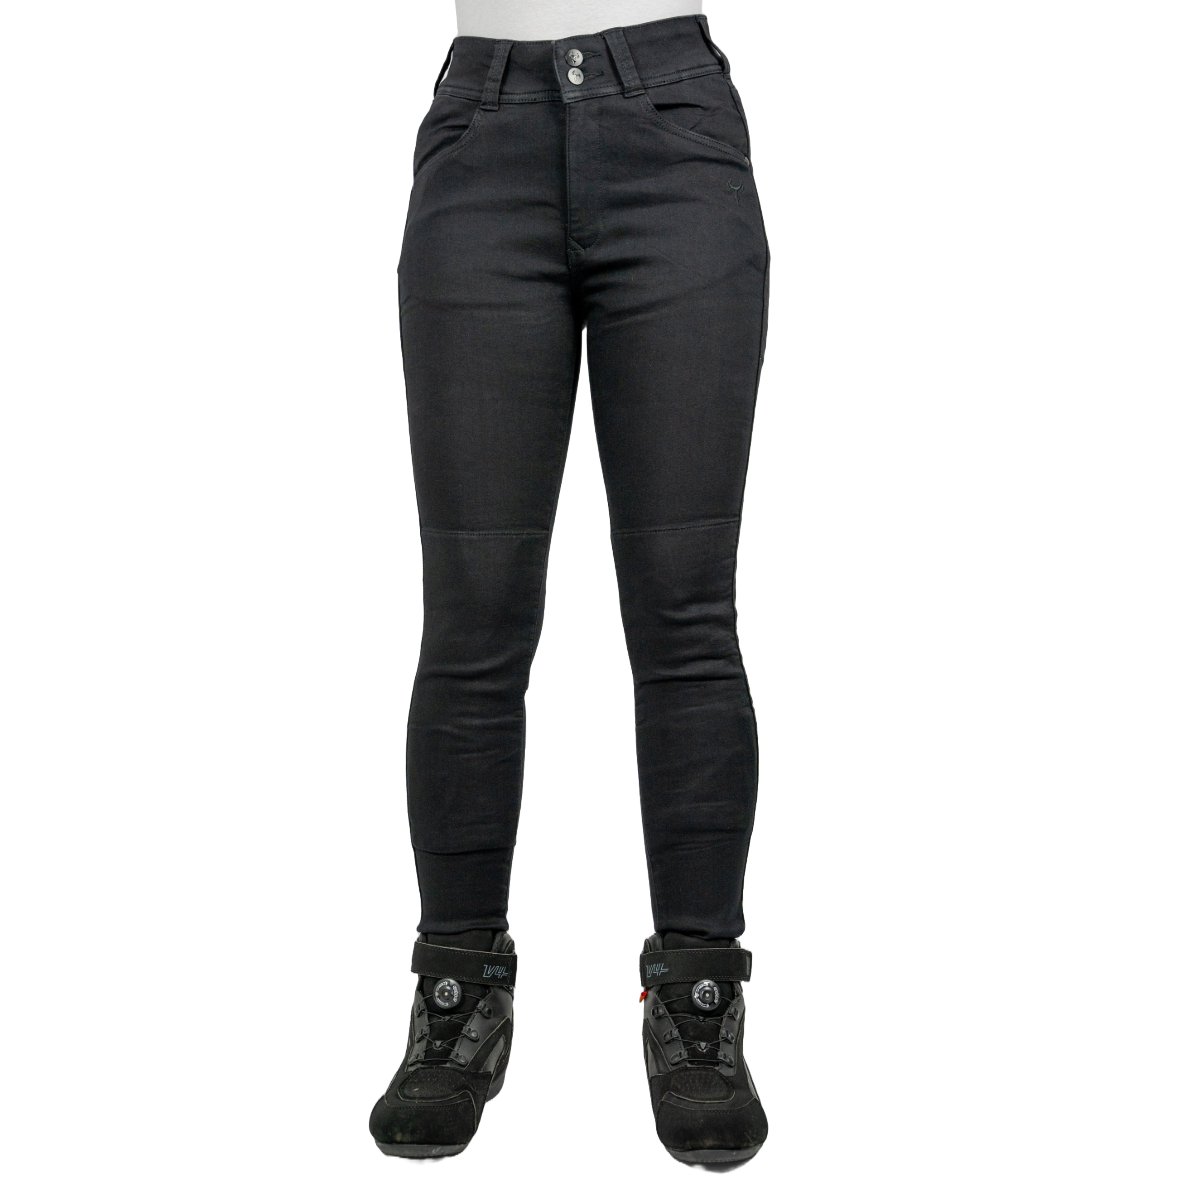 Image of Bull-it Ladies Fury Skinny Fit Short Pants Black Size 36 EN